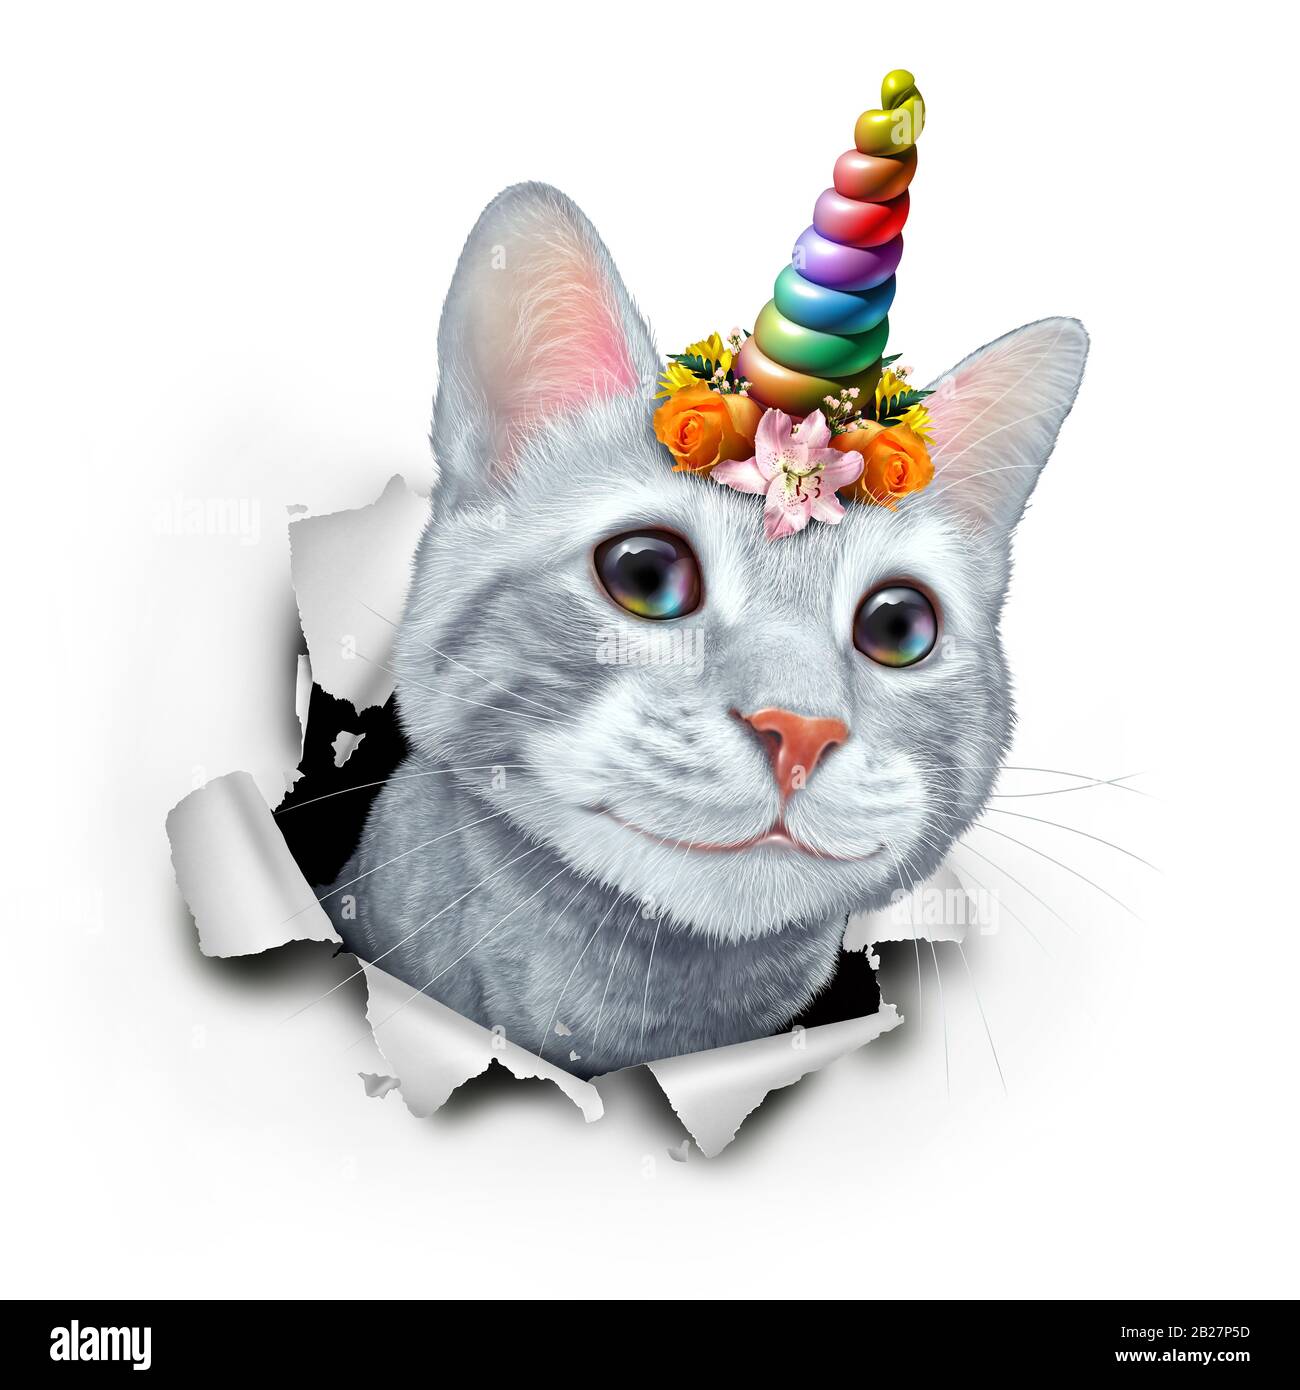 Kitty Einhorn als niedliches Kätzchen mit einer märchenhaften magischen Hornregenbogenkatze mit einem Blumenkranz mit 3D-Illustrationselementen. Stockfoto